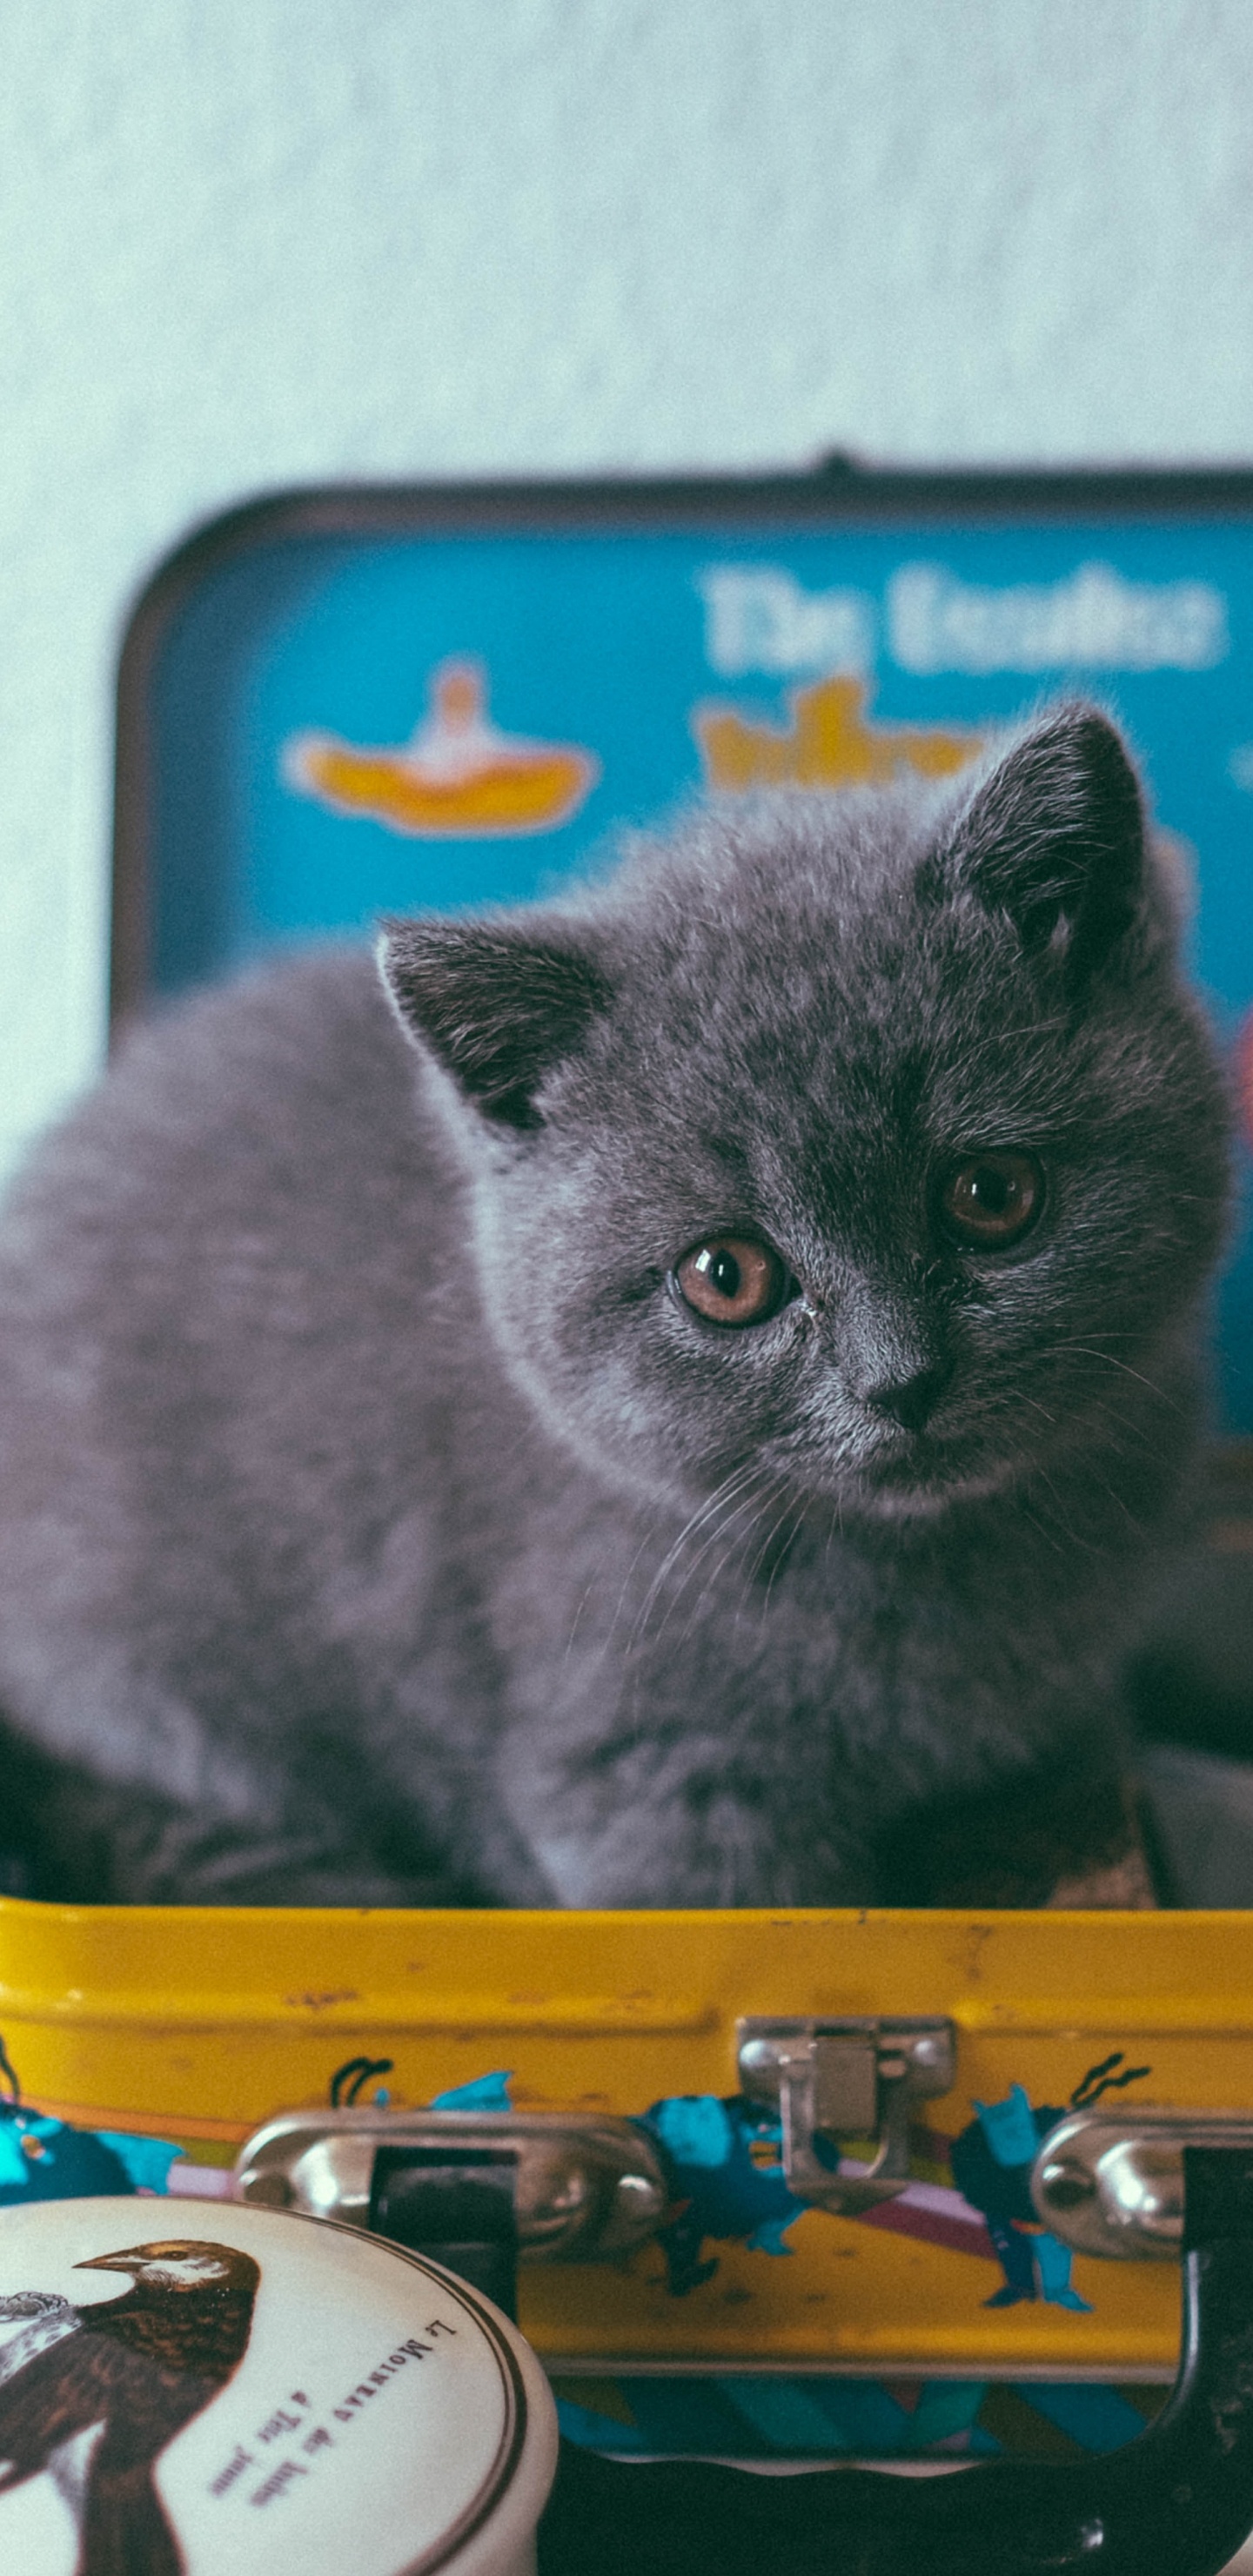 Graue Katze Auf Gelbem Und Blauem Plastikbehälter. Wallpaper in 1440x2960 Resolution